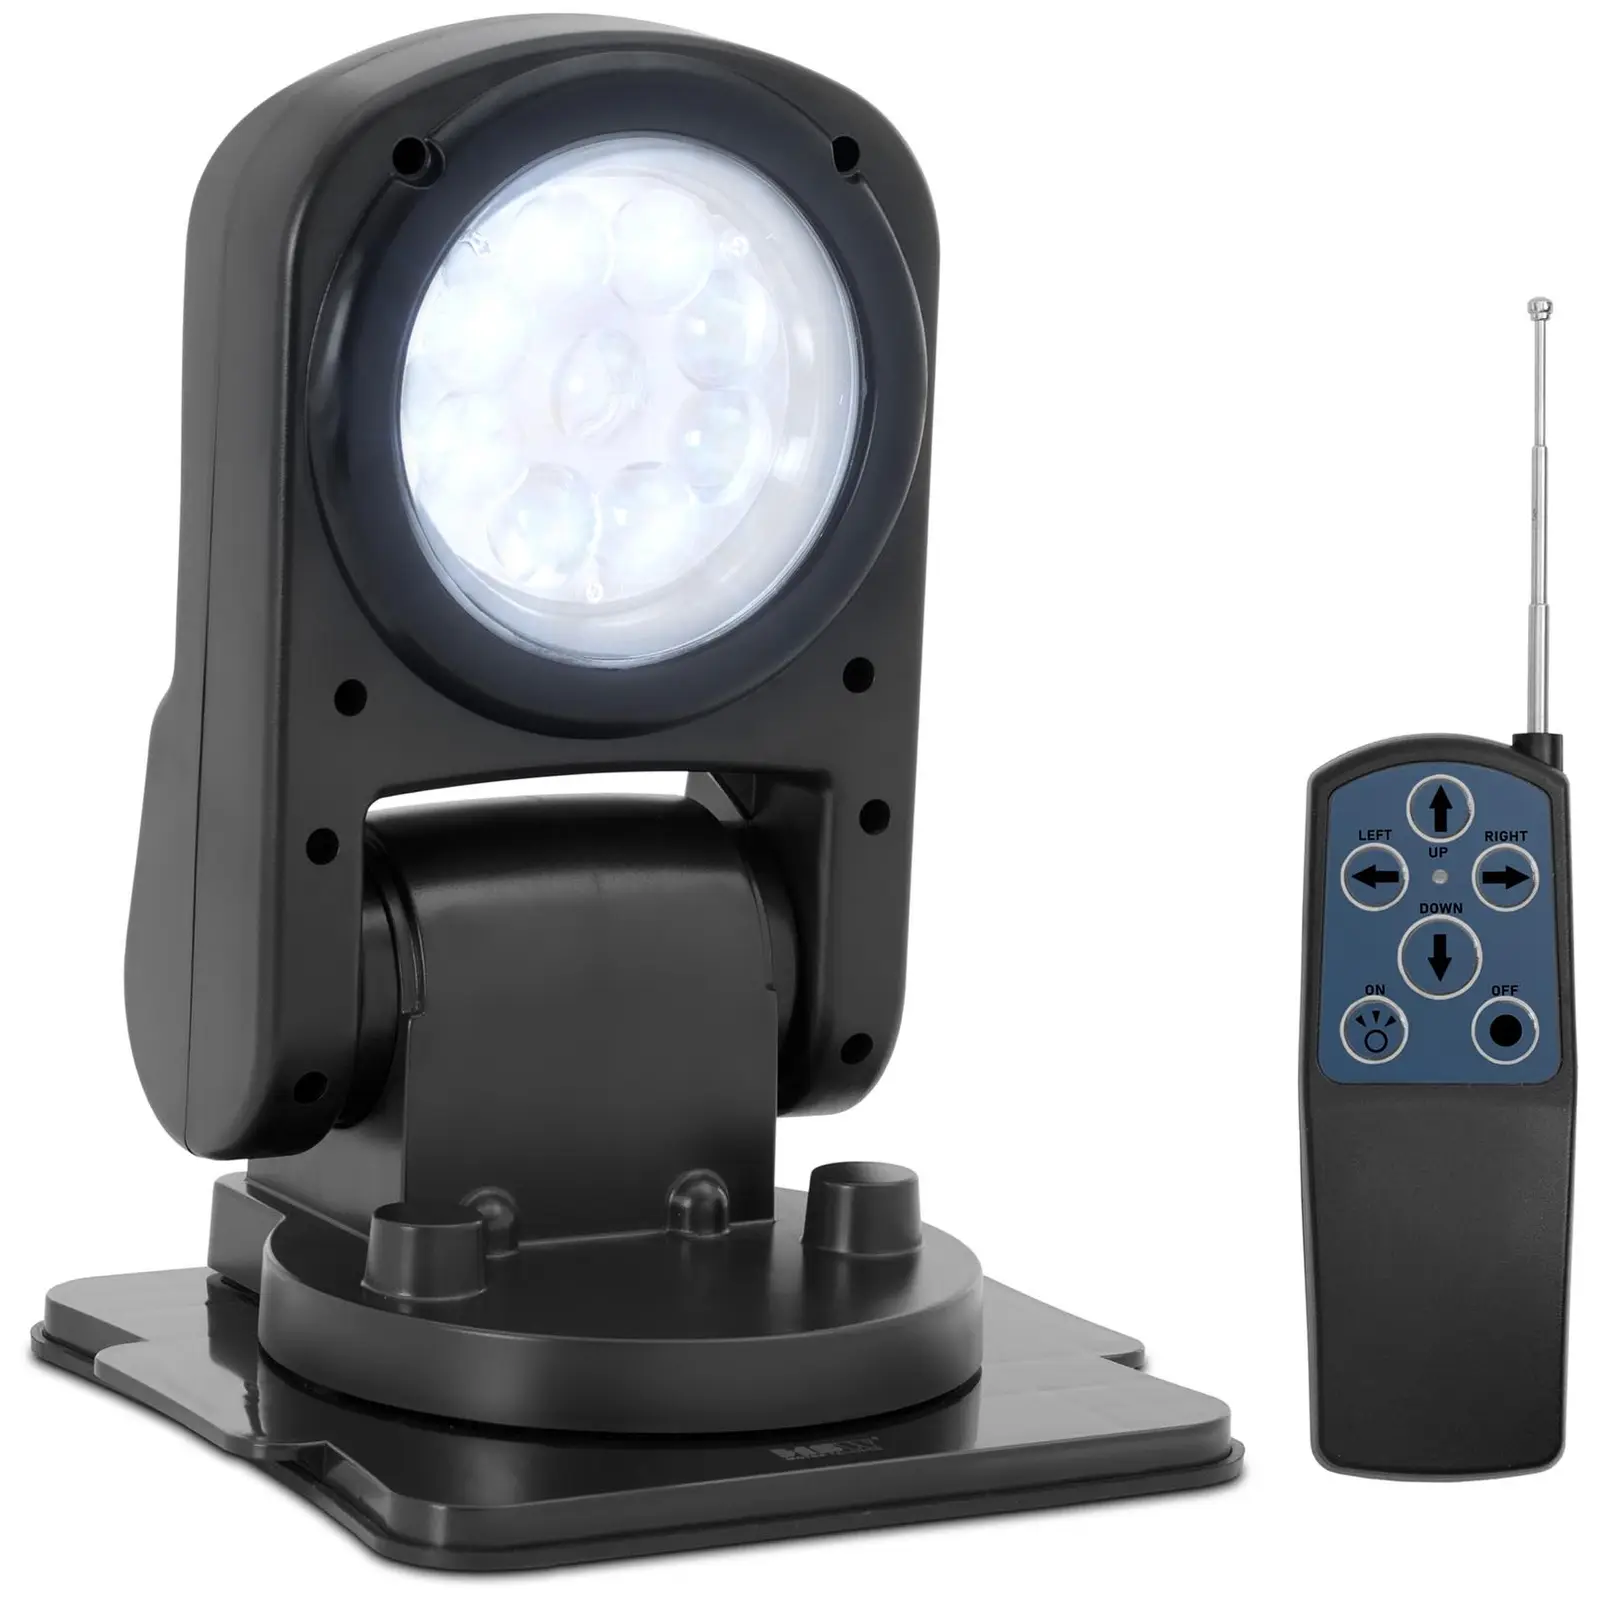 Holofote LED - 9-32 V - 45 W - rotação de 360° - inclinação de 180° - com controlo remoto